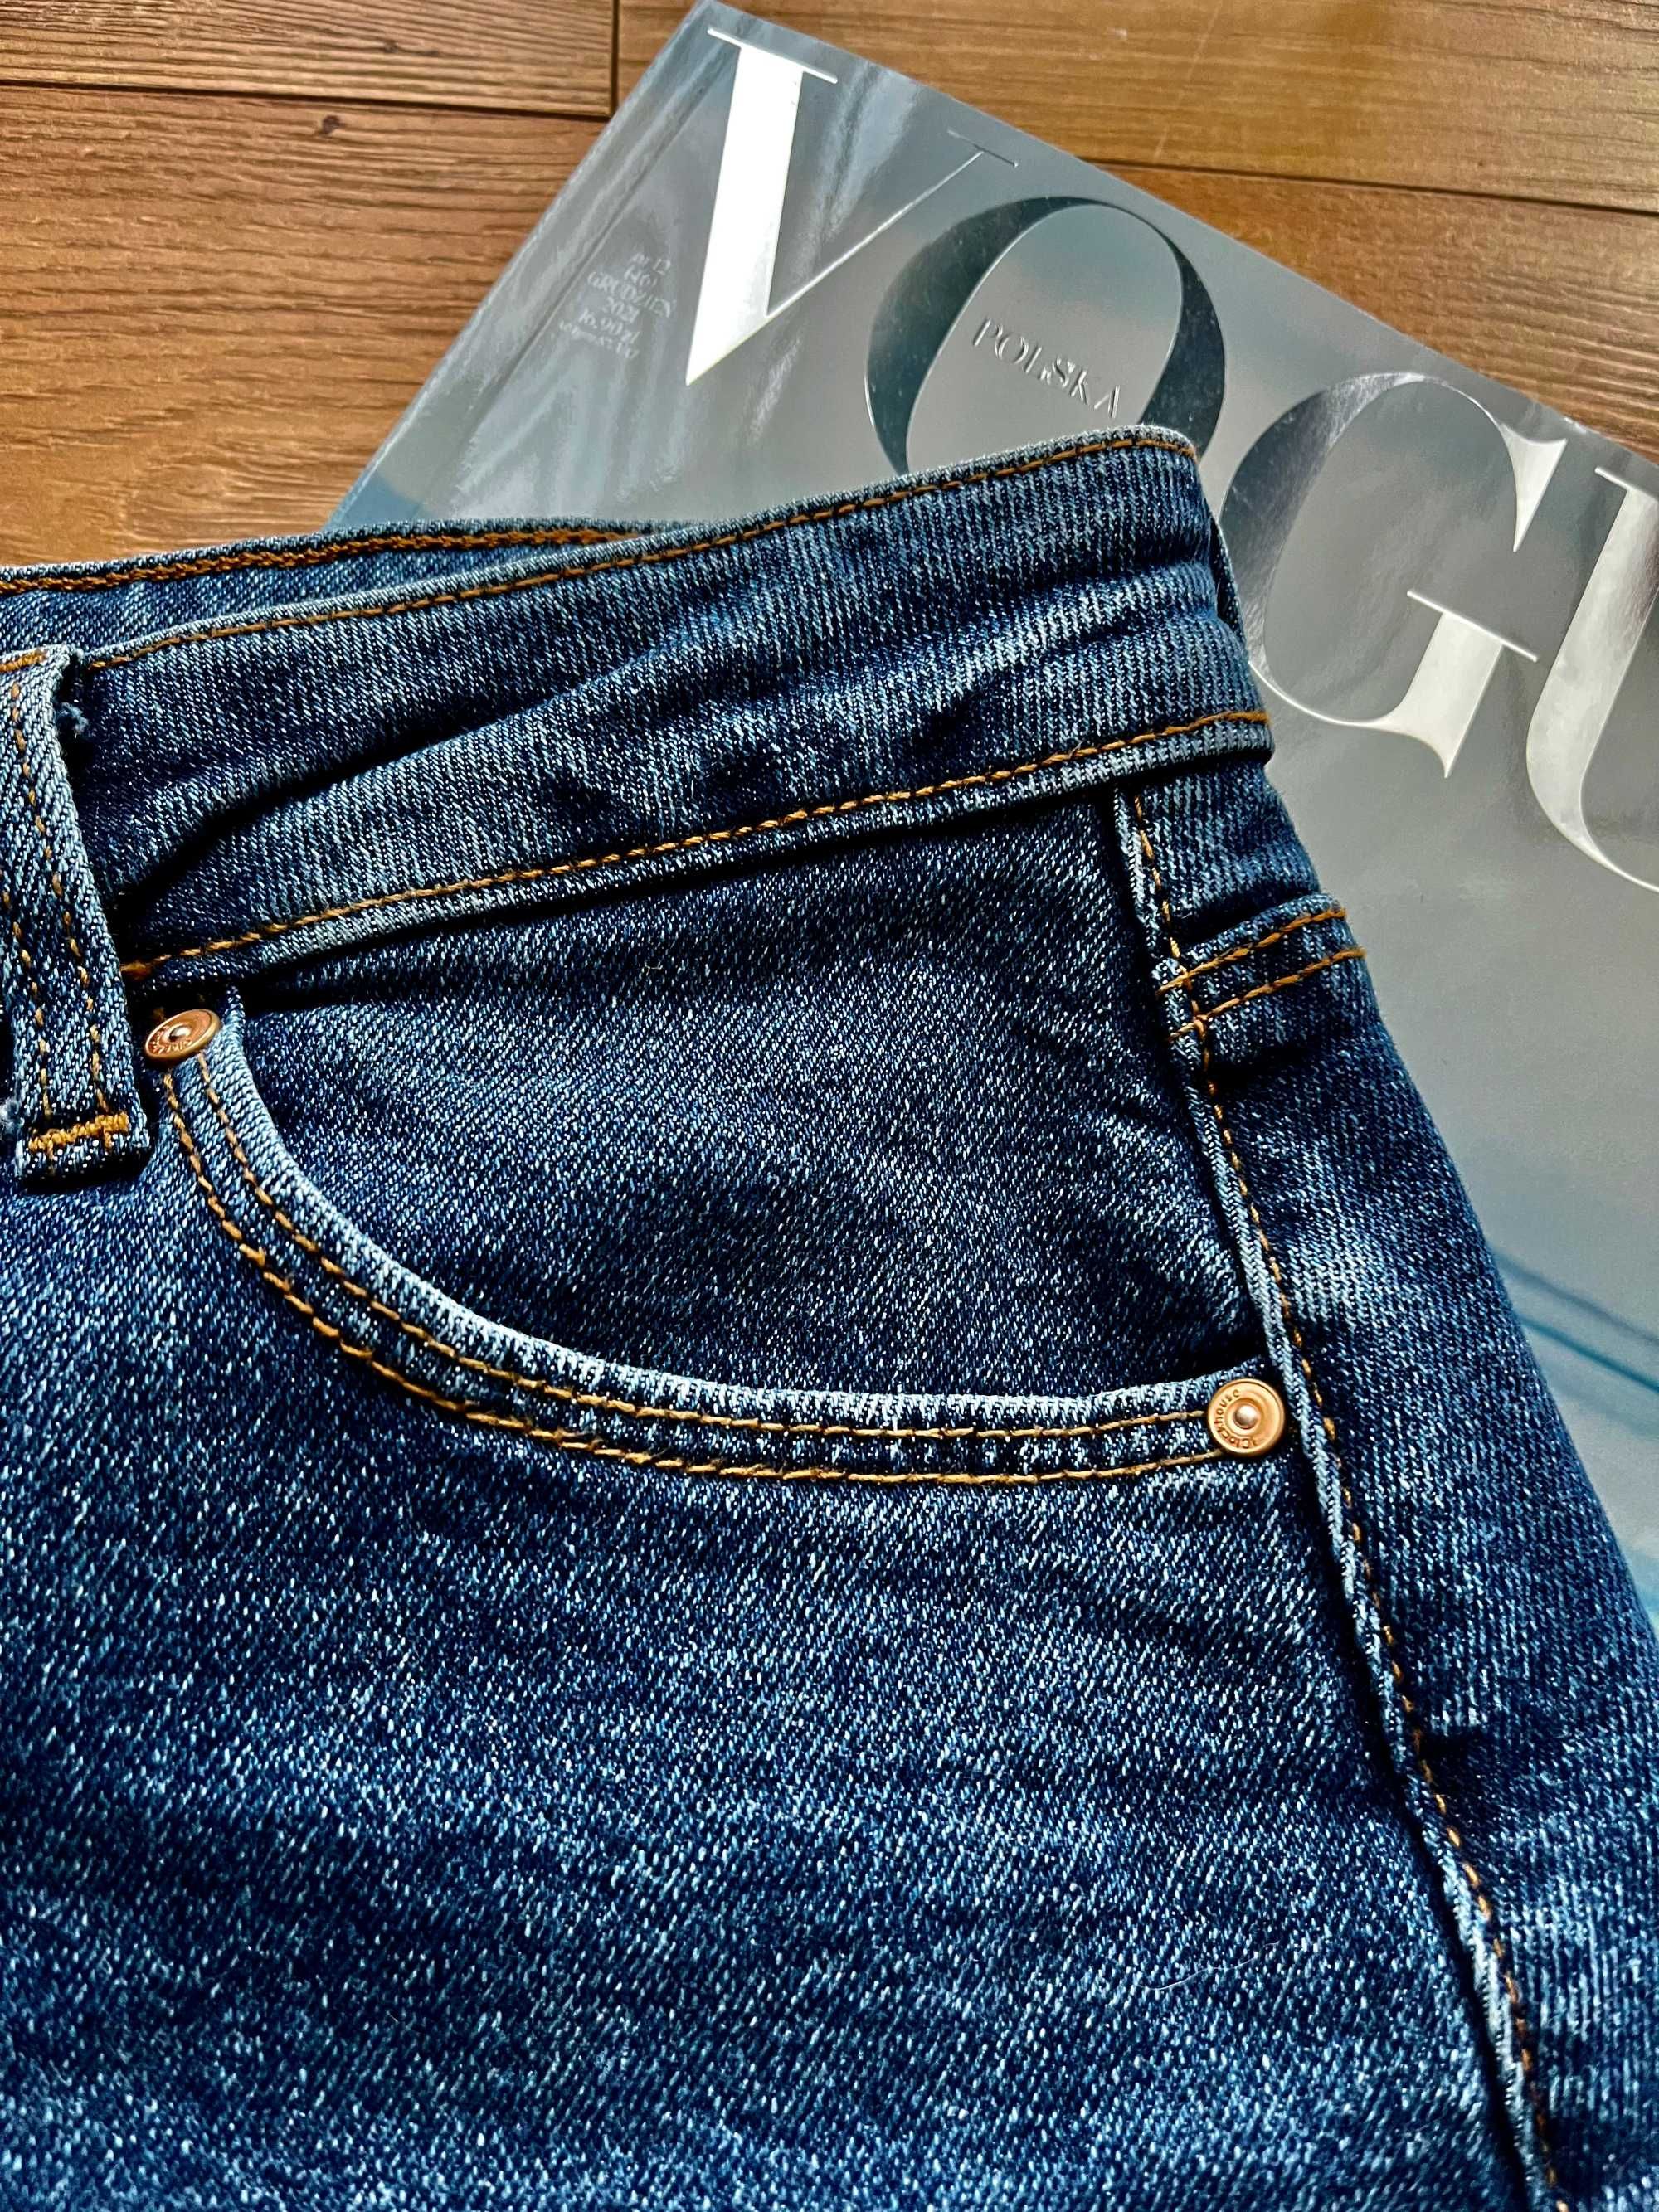 Spódnica jeansowa dżinsowa 38 niebieska Clockhouse vintage klasyczna